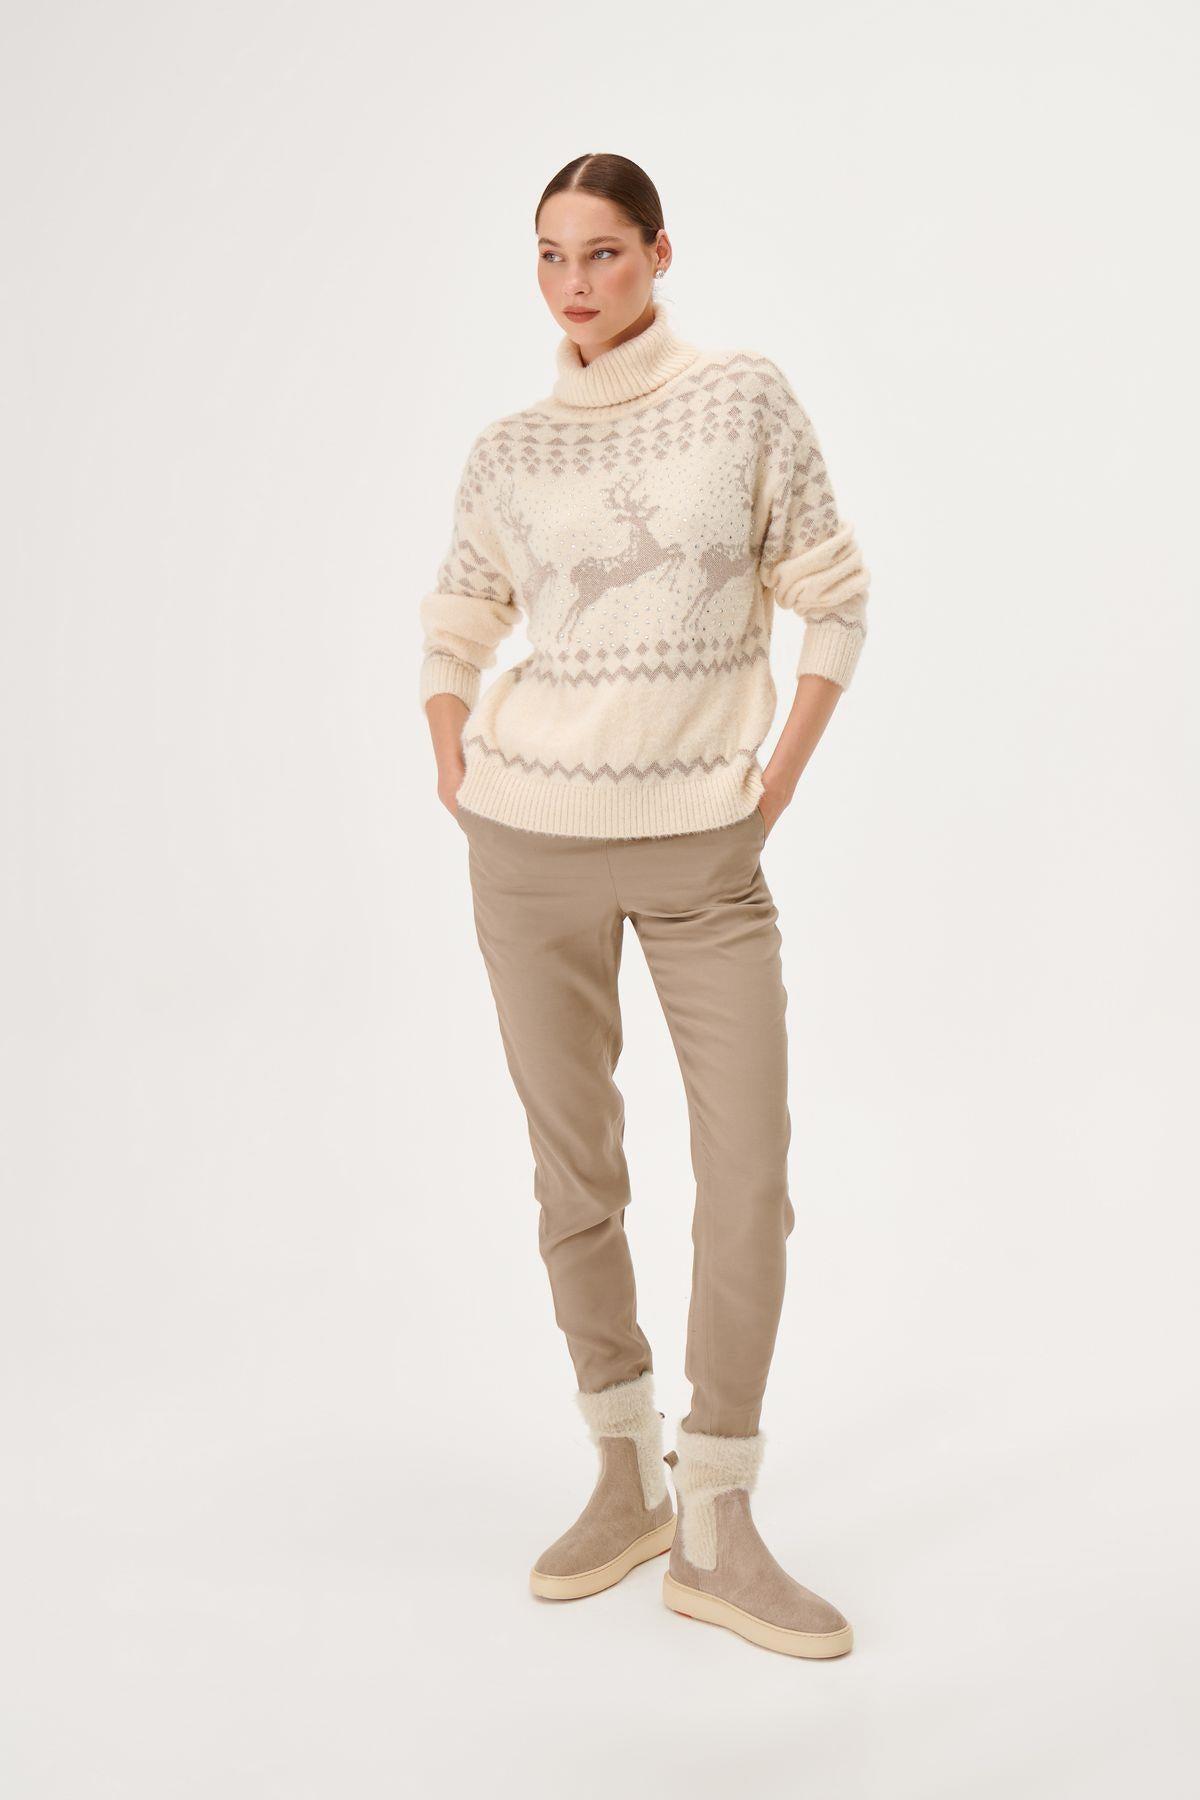 Deer Patterned Stoned Ecru Knitwear Sweater